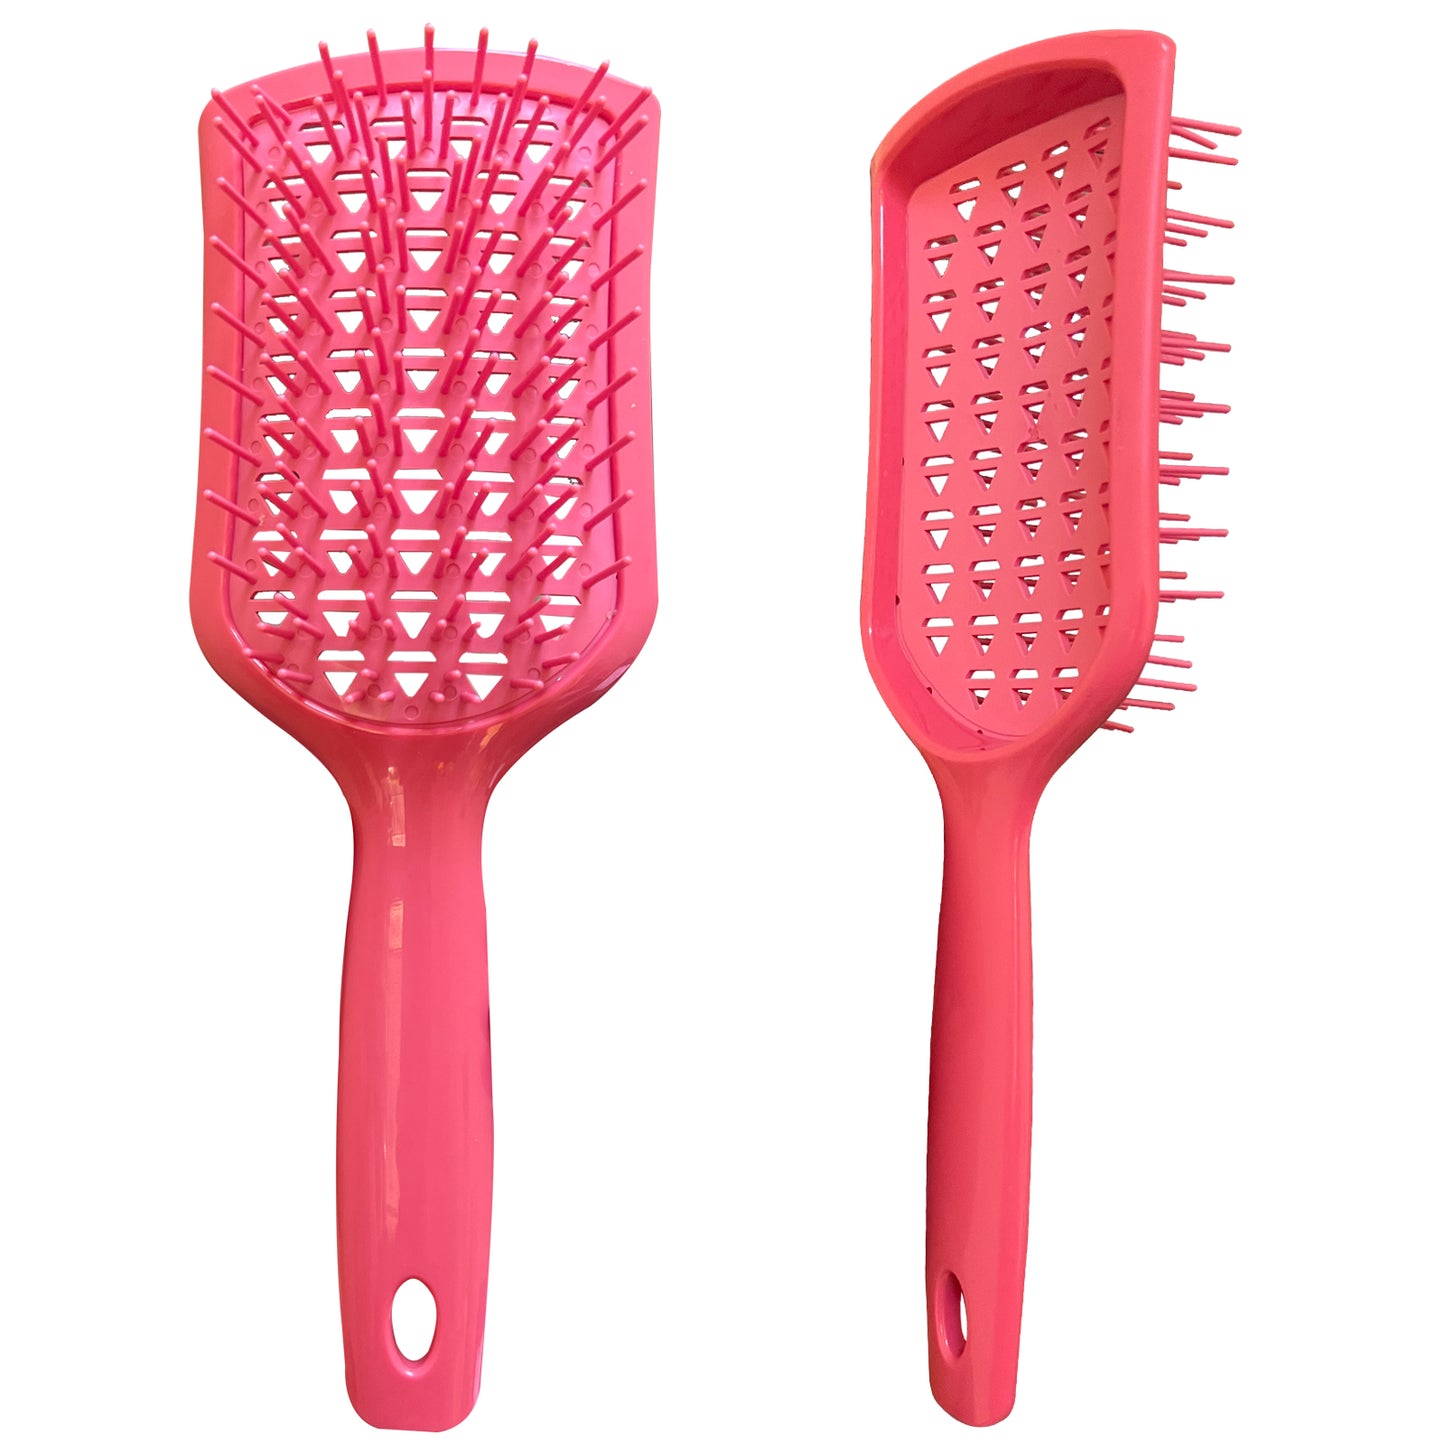 Detangling Brush Scalp Brush Detangling Hair Brush , Dry Wet Brush Paddle Detangling Brush with Flexible Bristle for Long Thick Curly Hair